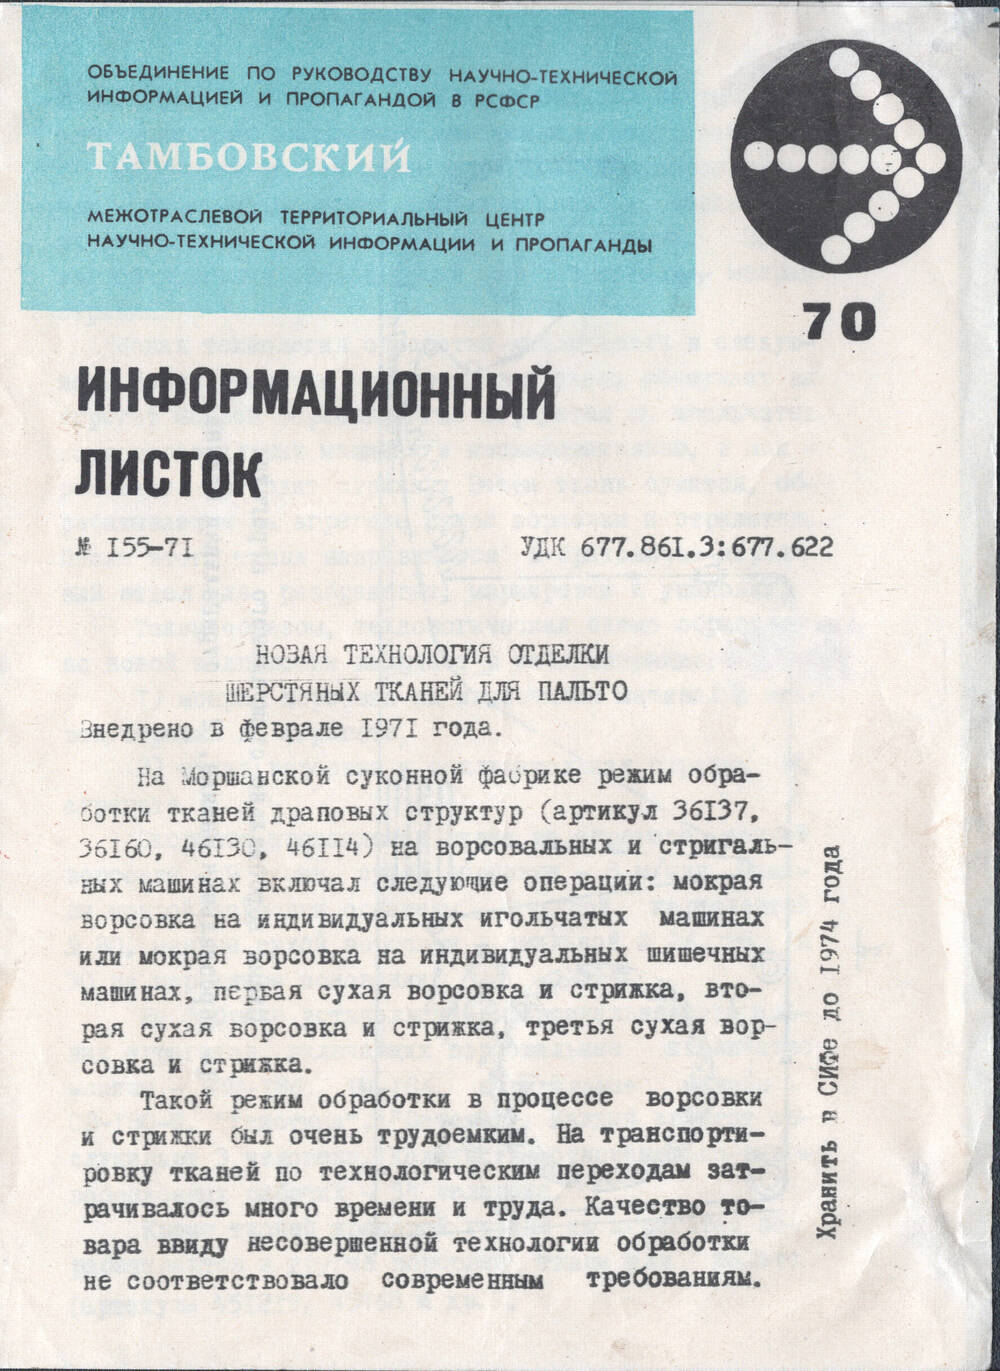 Информационный листок № 155-71 рационализатора Земцова Н. о новой технологии отделки шерстяных тканей для пальто.